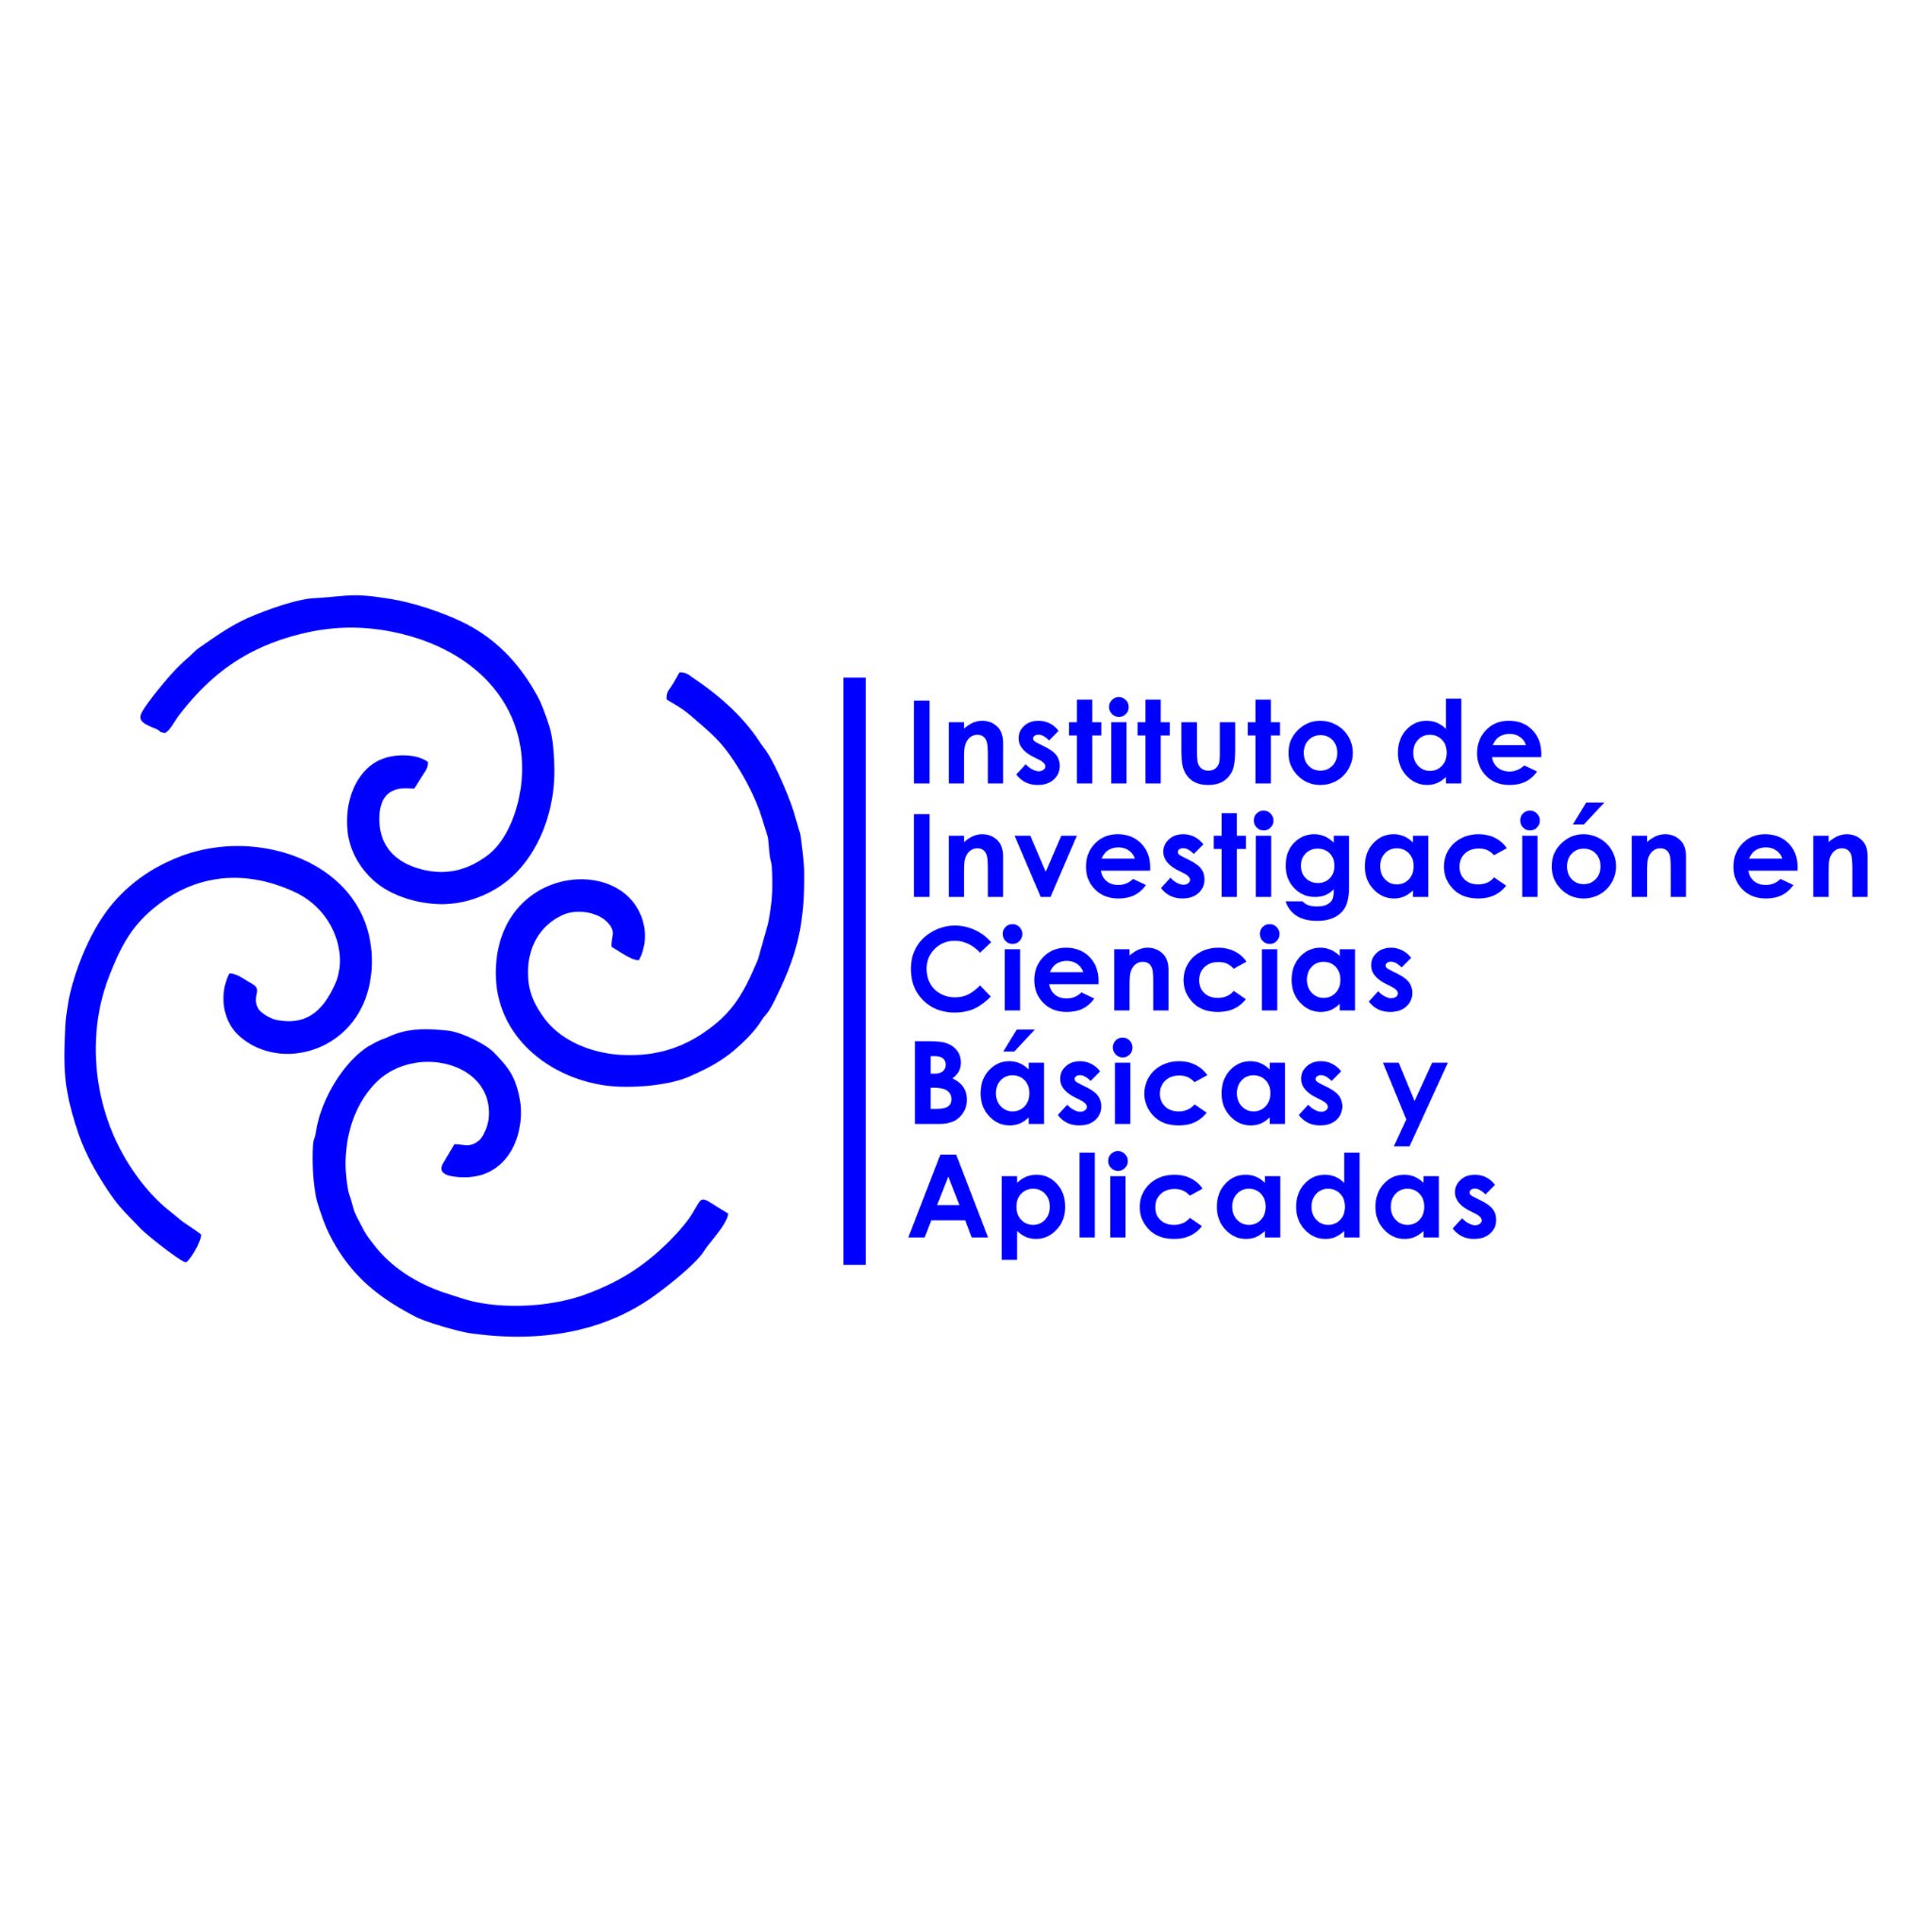 Instituto de Investigación en Ciencias Básicas y Aplicadas | Universidad Autónoma del Estado de Morelos